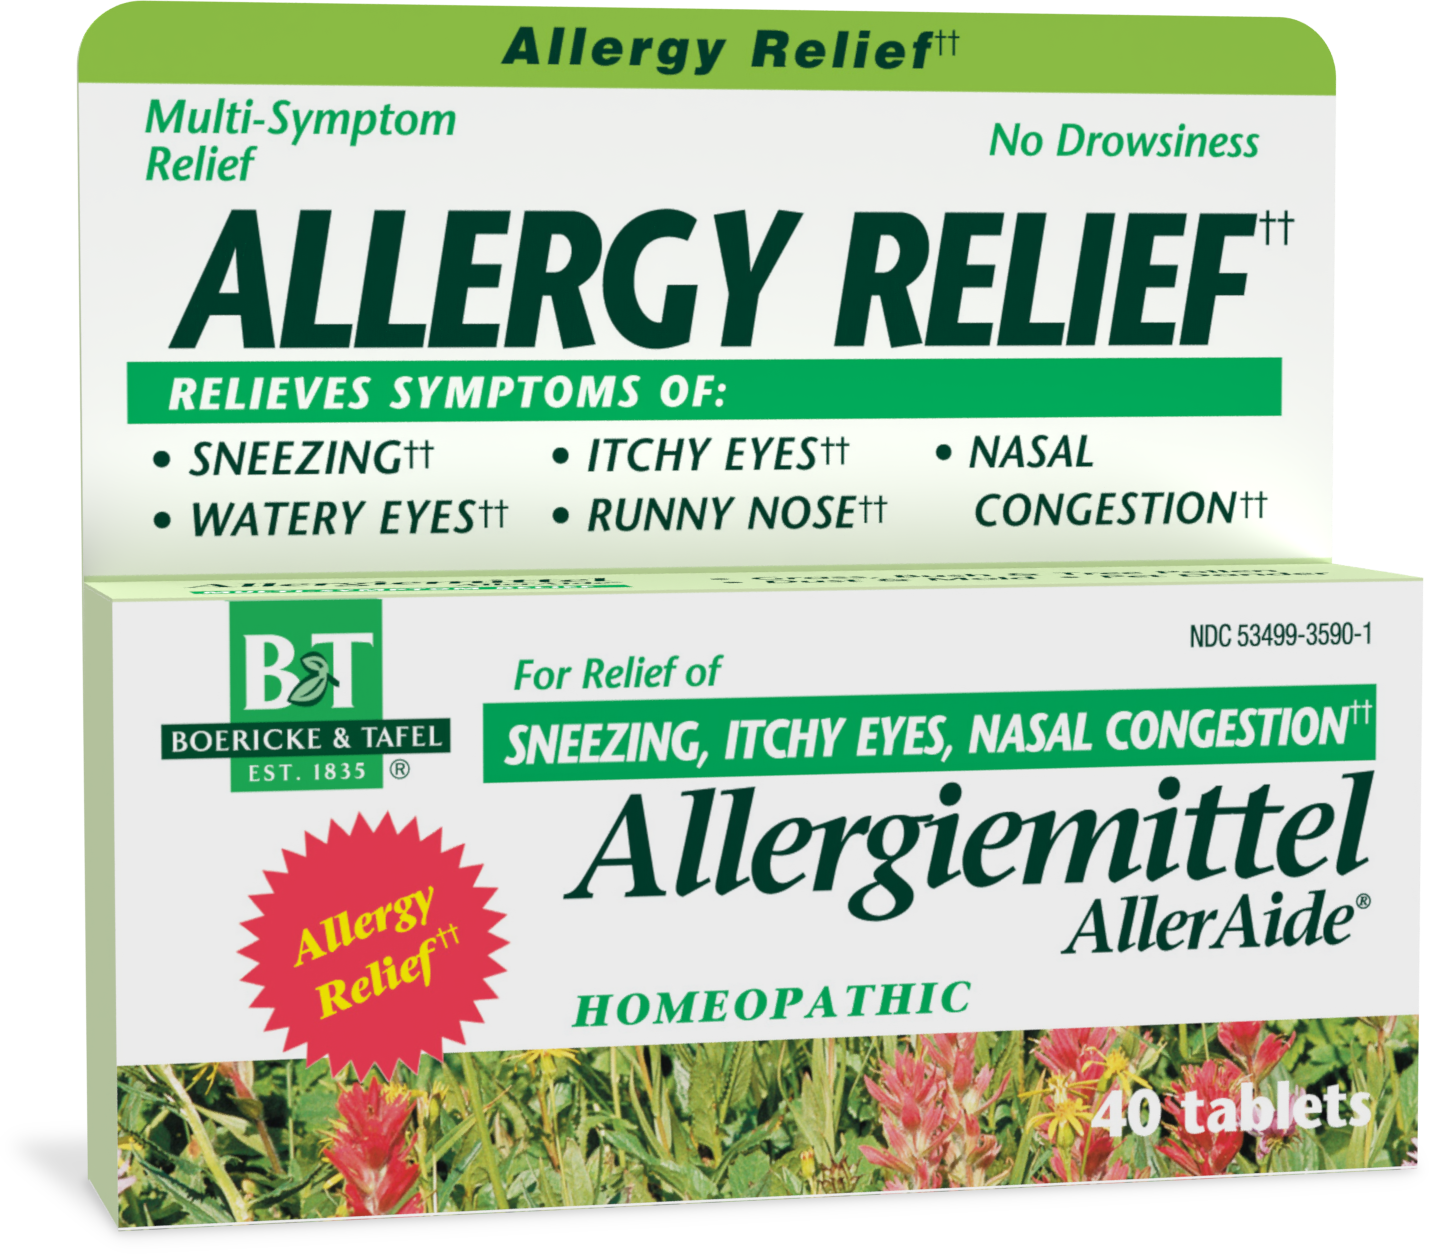 Allergiemittel AllerAide®